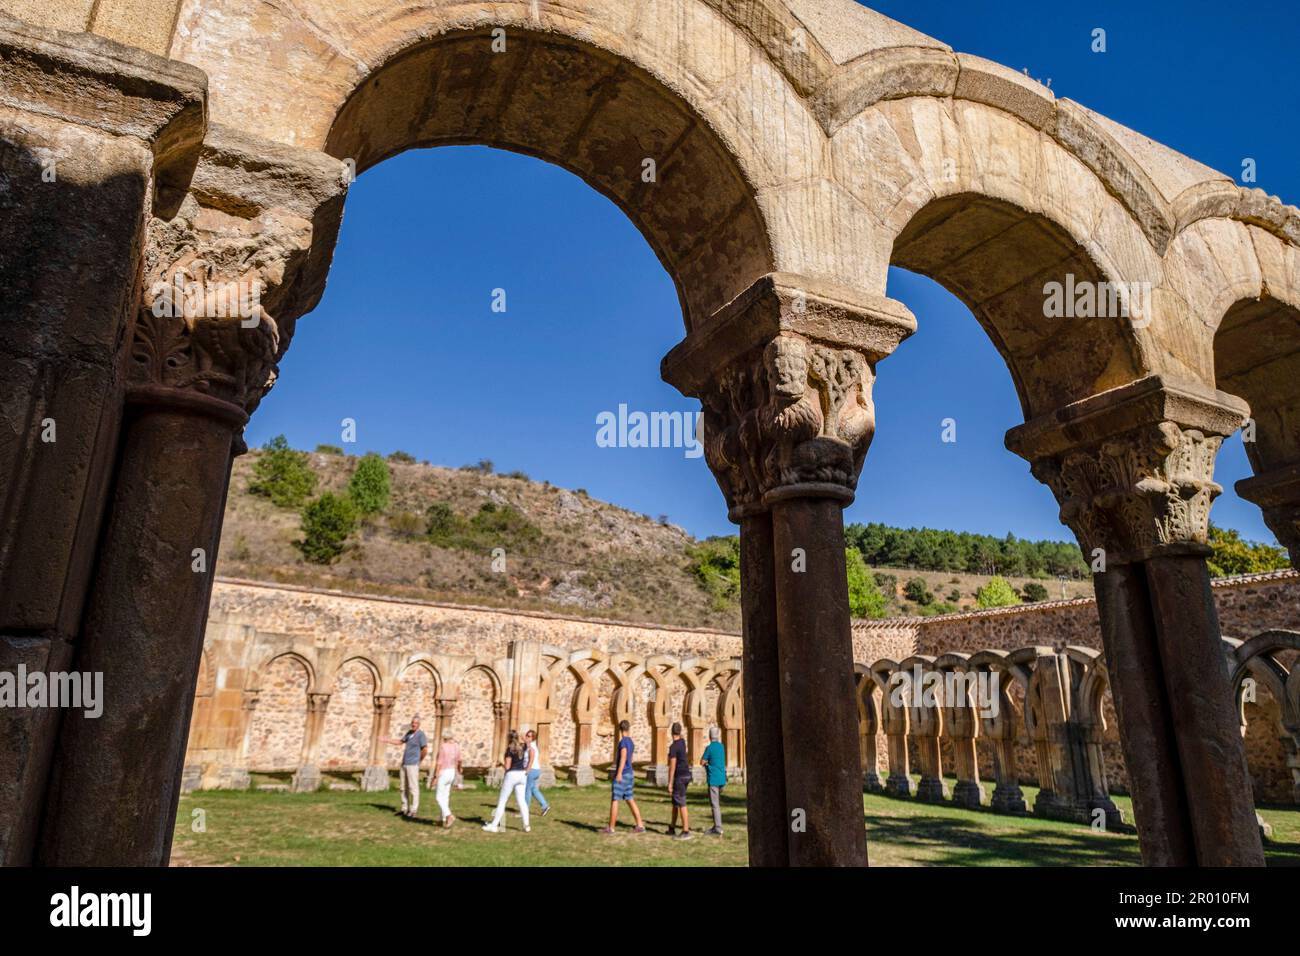 Klosterbögen, Kloster San Juan de Duero, kastilische romanische Architektur, 12. Jahrhundert, Soria, Autonome Gemeinschaft Kastilien, Spanien, EUR Stockfoto